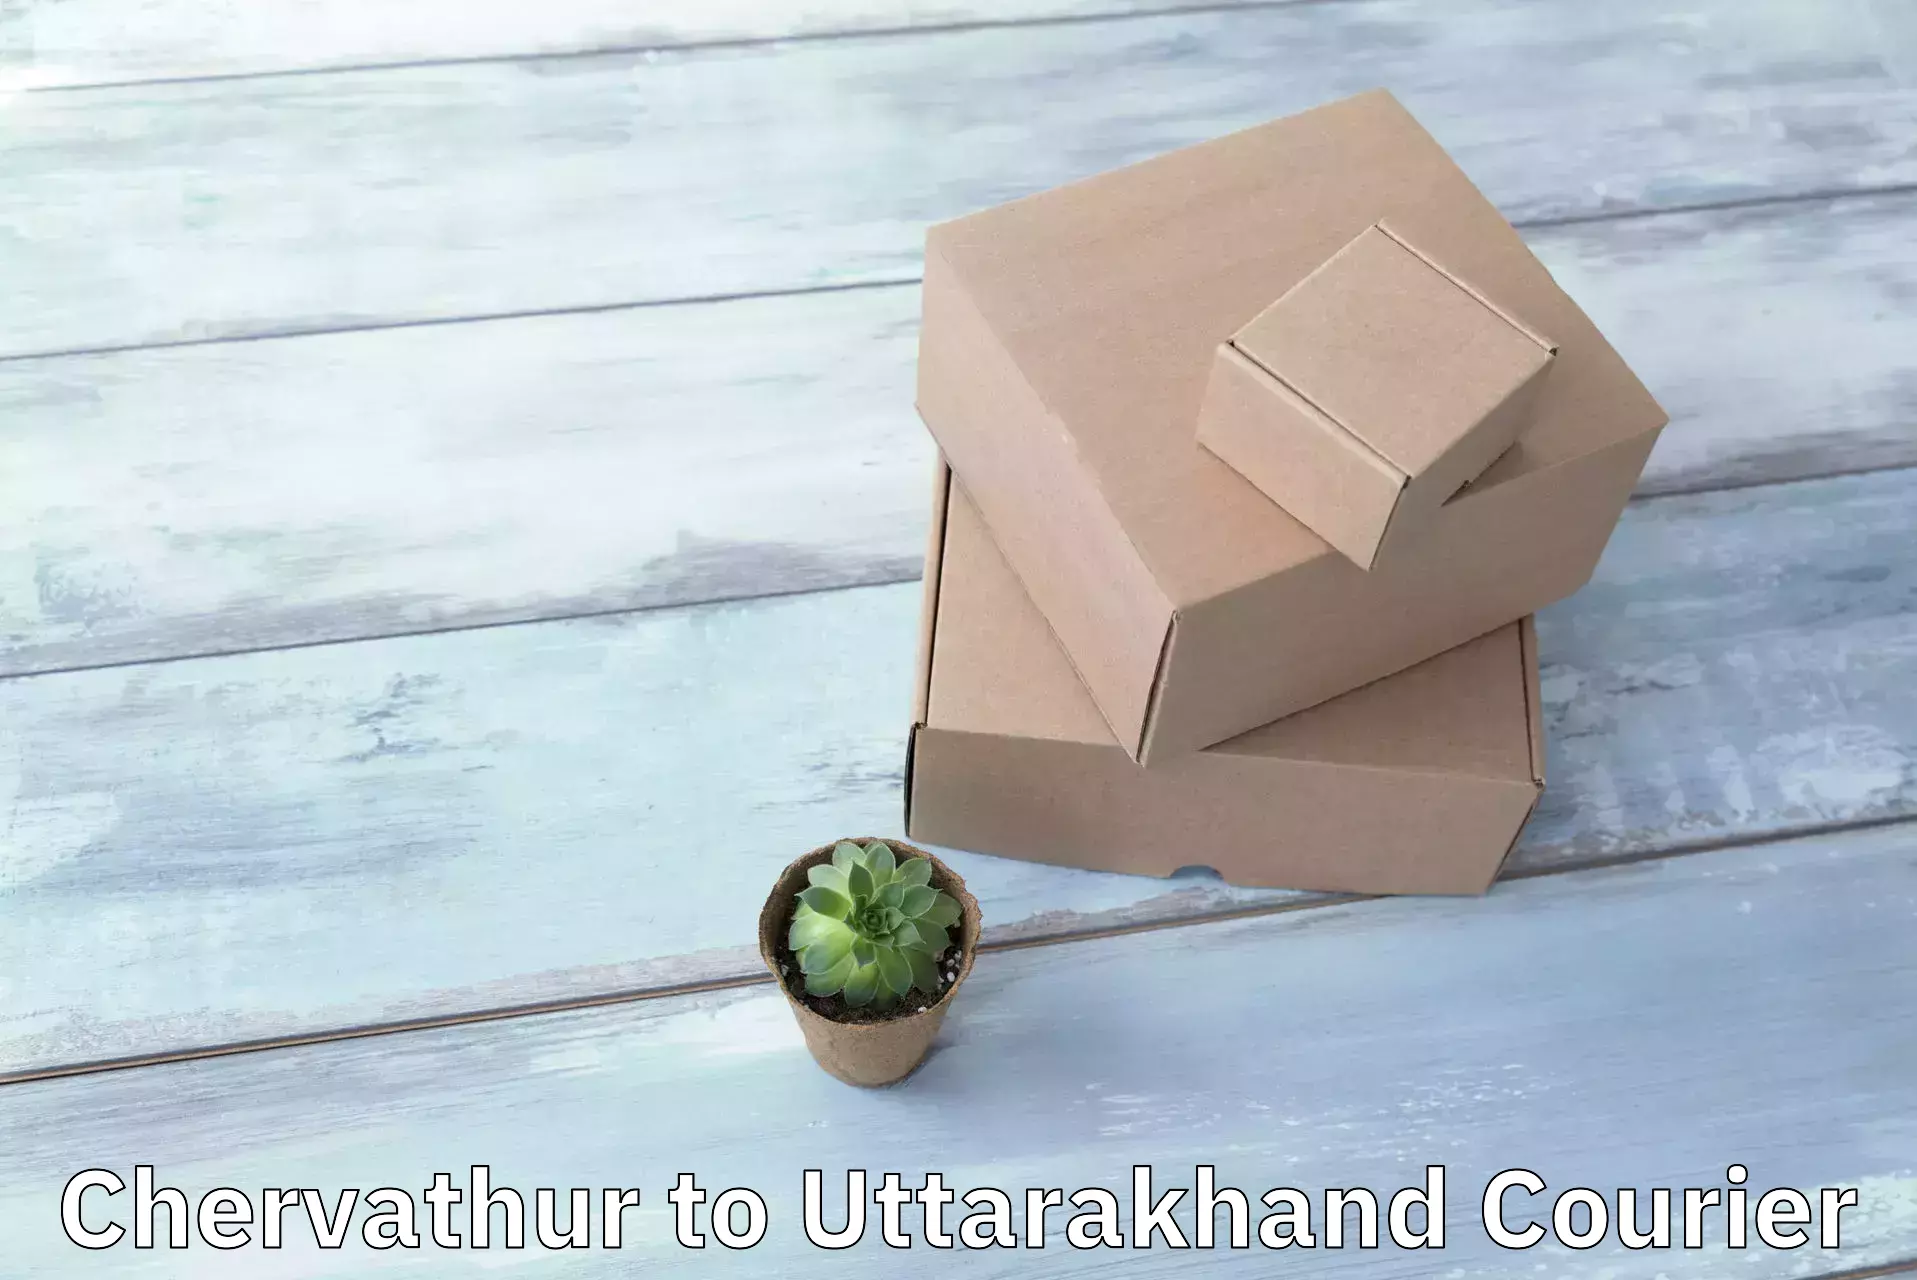 Efficient parcel delivery Chervathur to Paithani